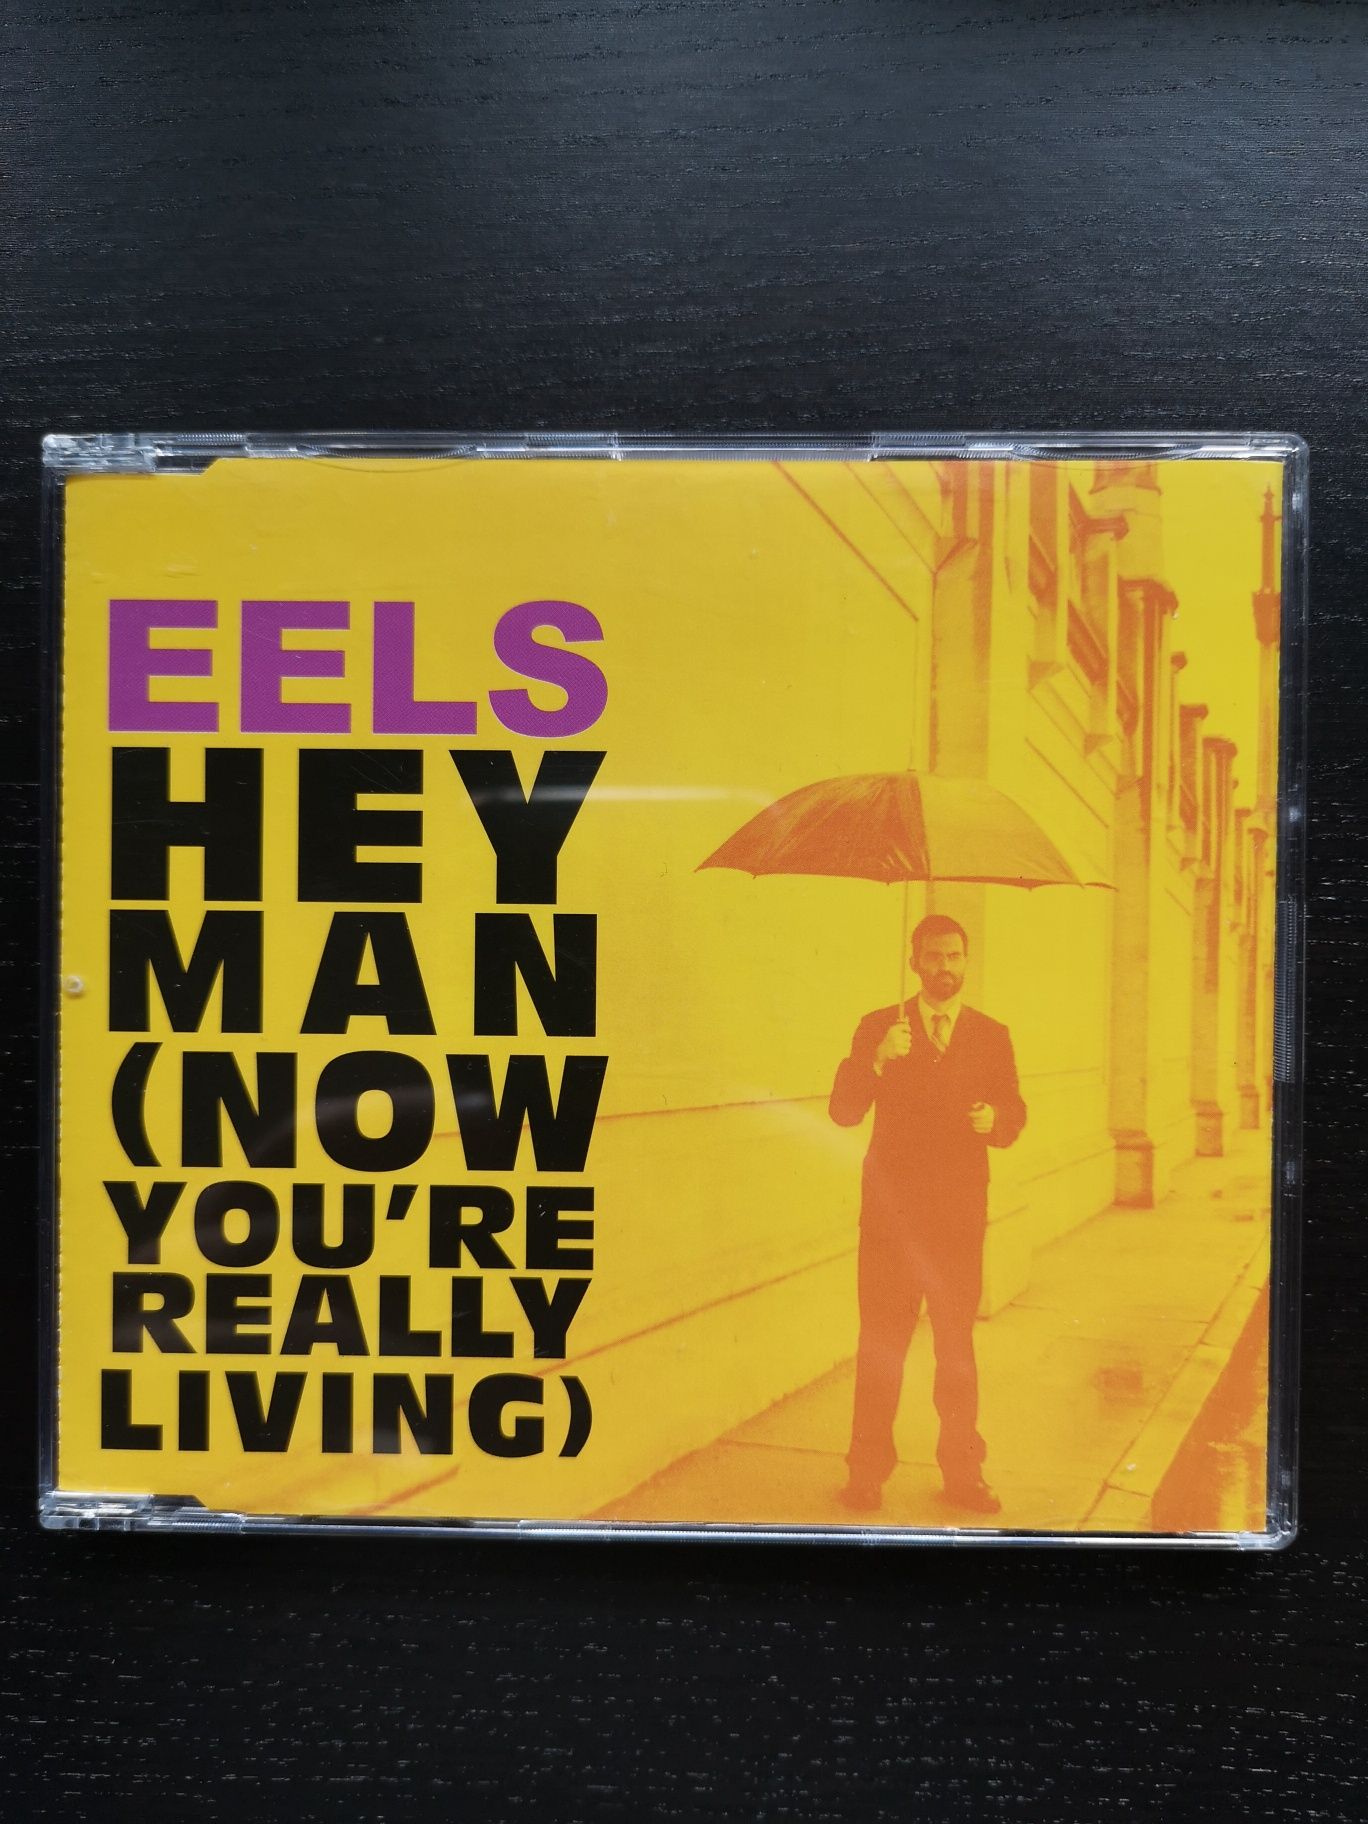 Eels [Single Colecionador] Hey Man